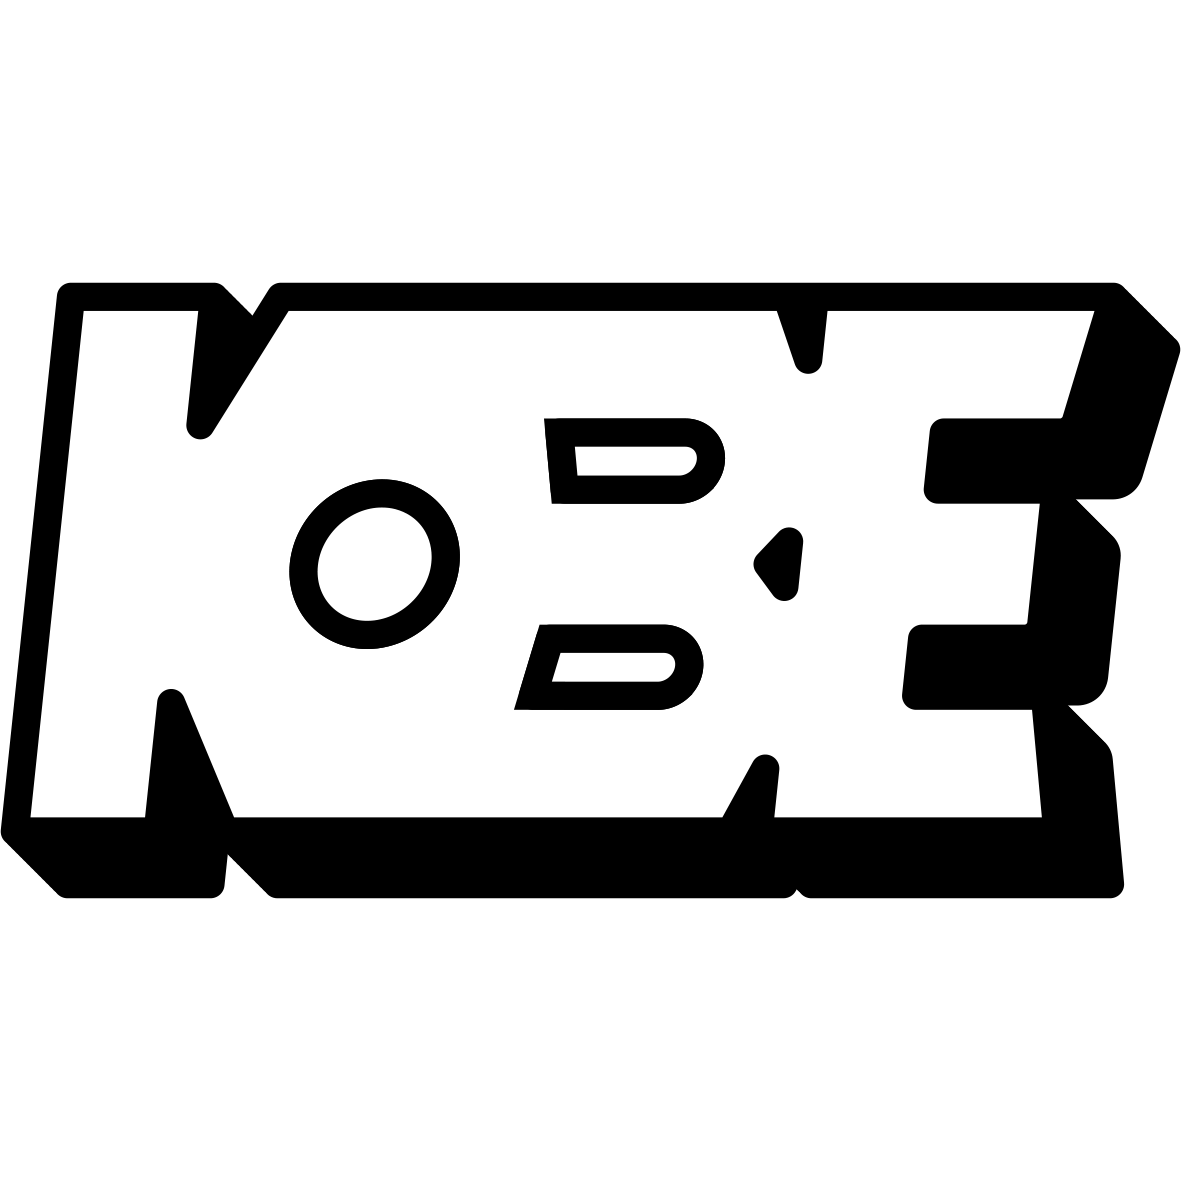 kobe, streetwear, thisiskobe, logo, logodesign, fashion, style, oversized, oversizedshirts, instagram 